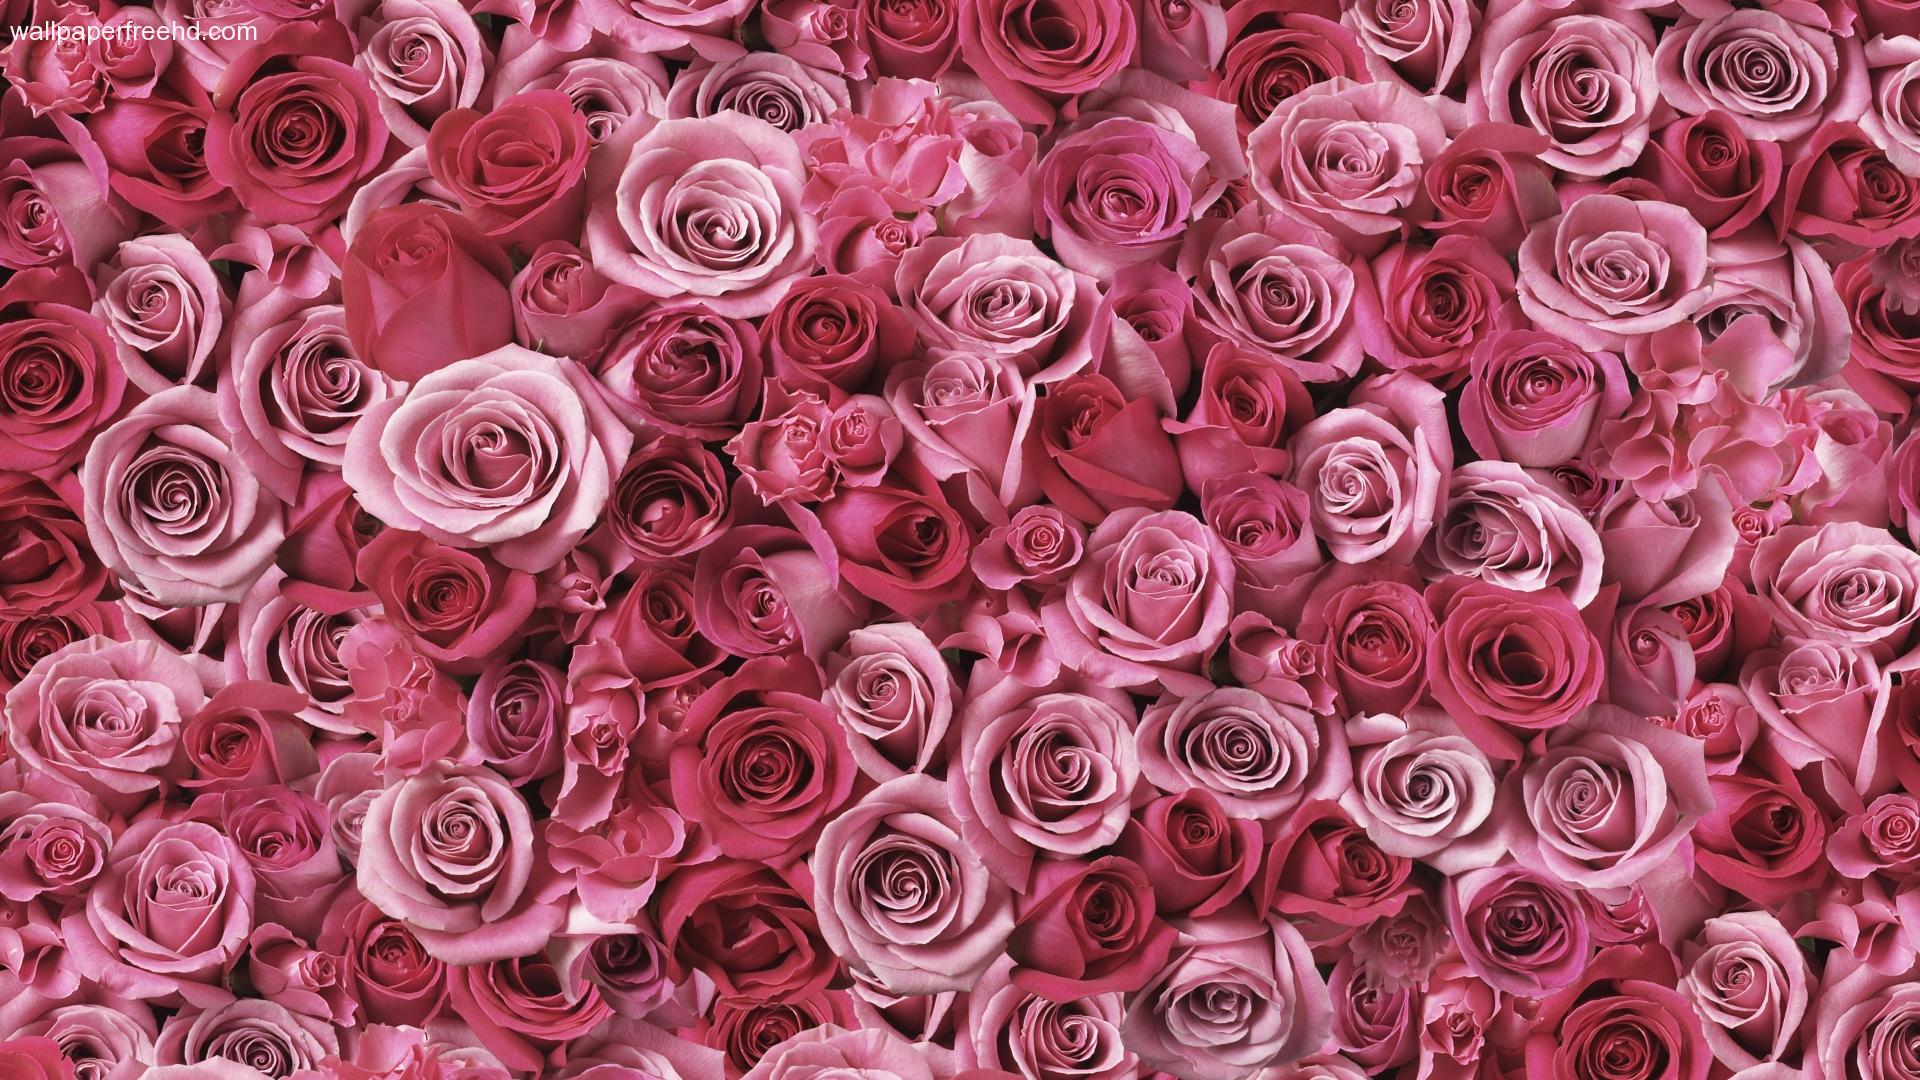 floral wallpaper vintage rose